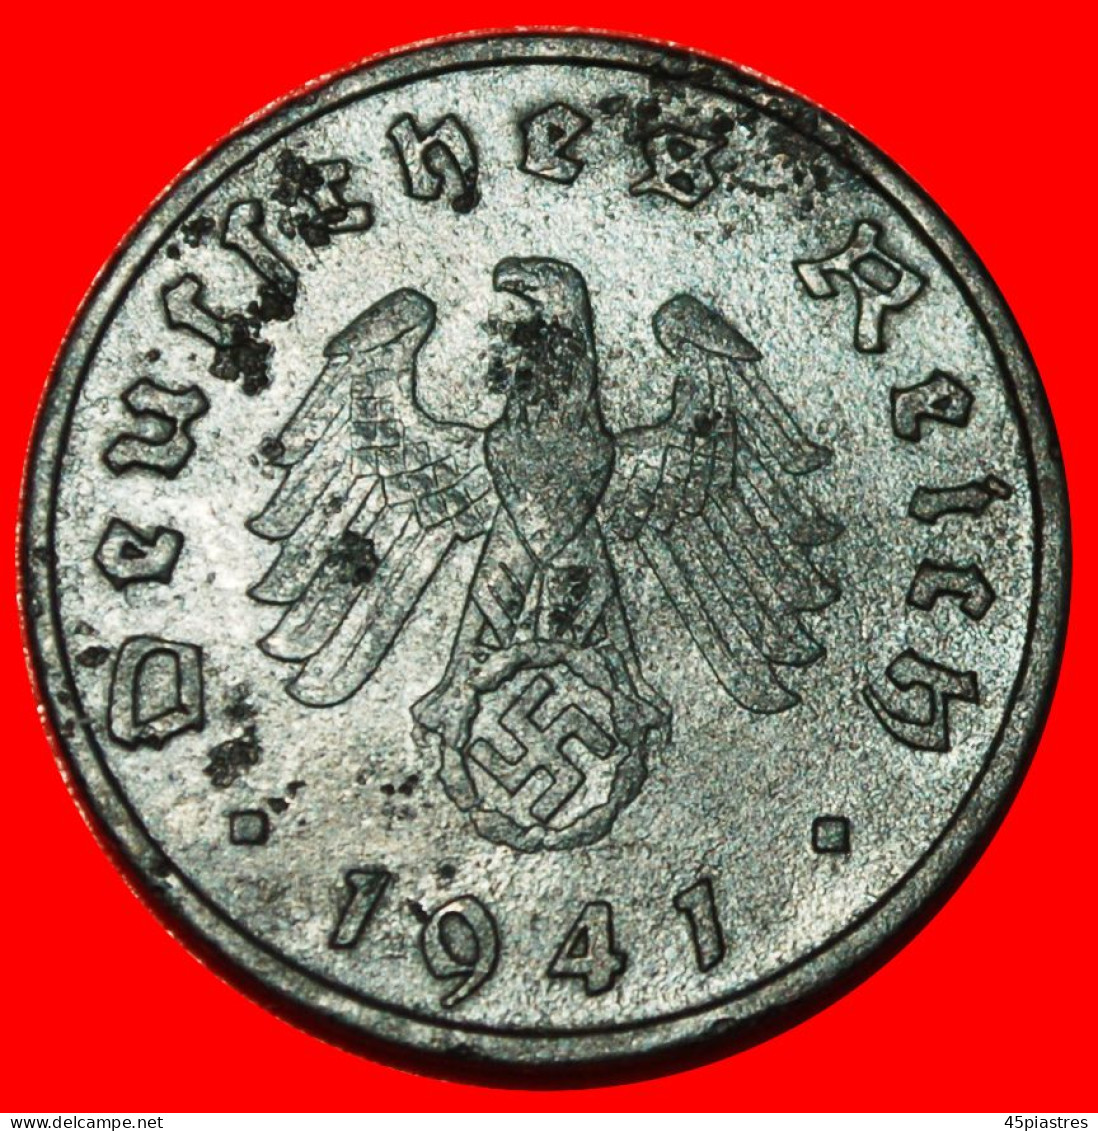 * SWASTIKA 1940-1945: GERMANY  10 PFENNIGS 1941F BADEN-WUERTTEMBERG! THIRD REICH 1933-1945! · LOW START ·  NO RESERVE! - 10 Reichspfennig